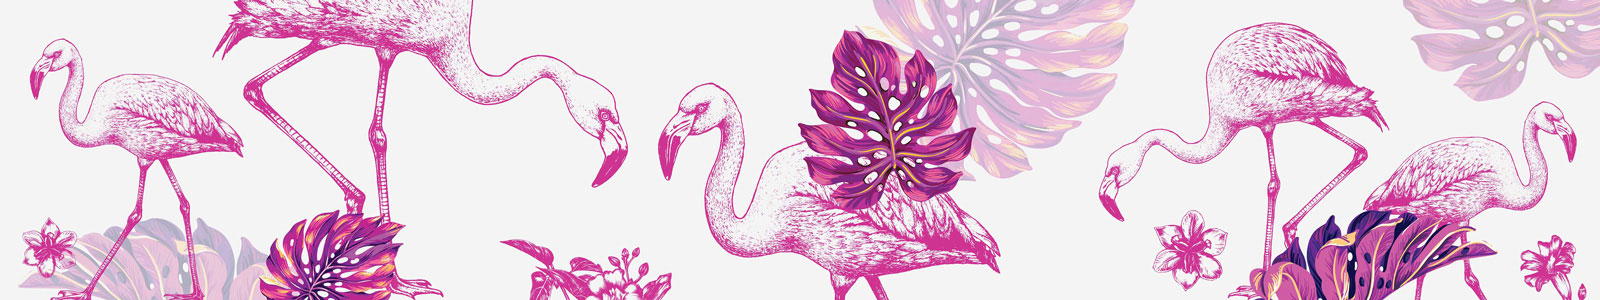 №4743 - Розовые фламинго на белом фоне